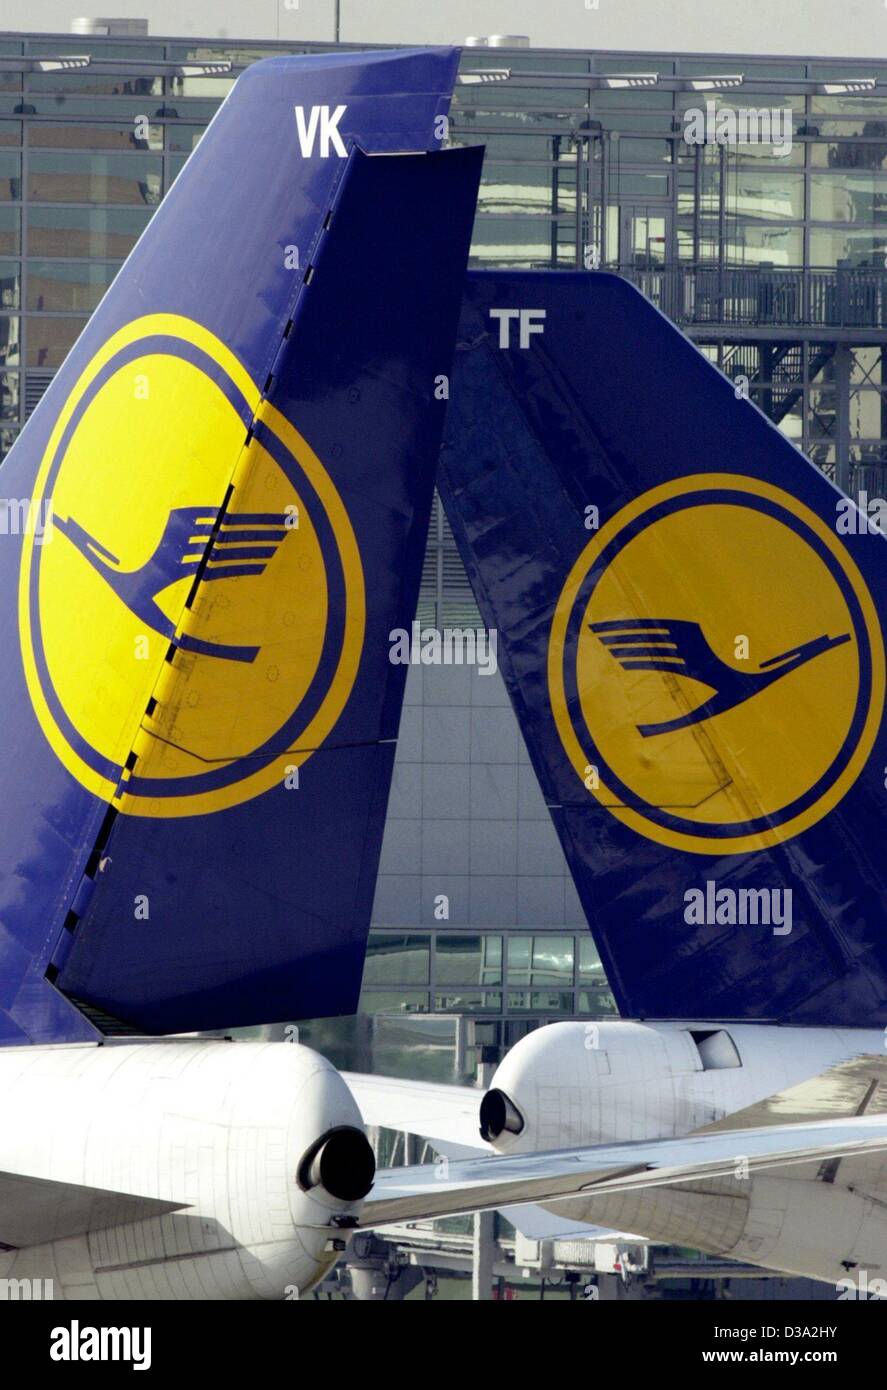 (Afp) - l'arrière par deux avions de la Lufthansa allemande arrière debout sur la piste de l'aéroport de Francfort, Allemagne, 12 mars 2002. Banque D'Images